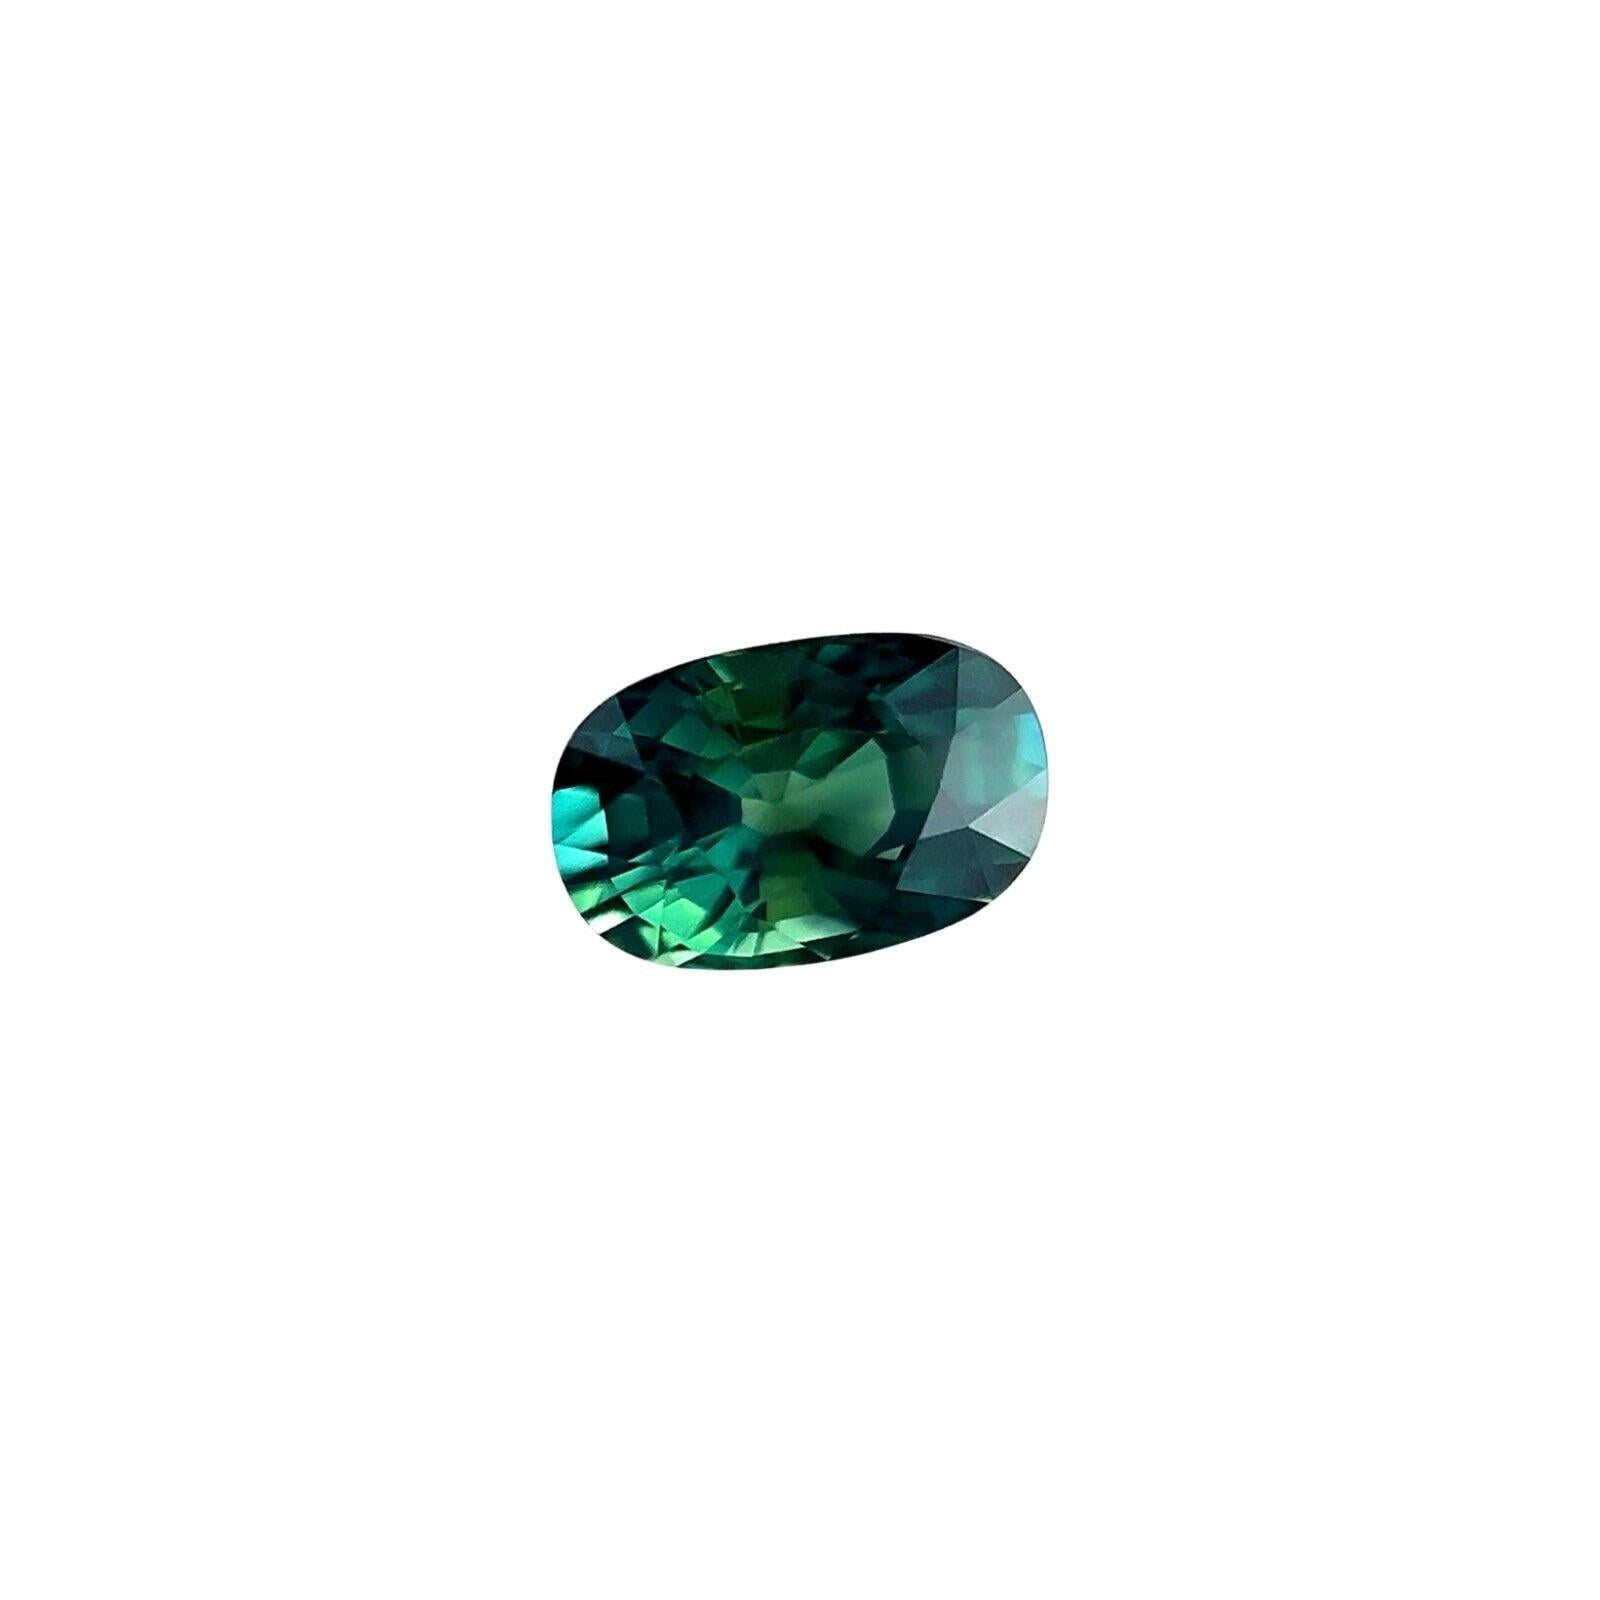 GIA Certified 1.03Ct Sapphire Natural Vivid Green Blue Untreated 6.8X4.3Mm IF

Saphir naturel non traité de couleur verte et bleue.
Saphir non chauffé de 1,03 carat d'une belle couleur vert bleu profond.
Entièrement certifiée par le GIA confirmant